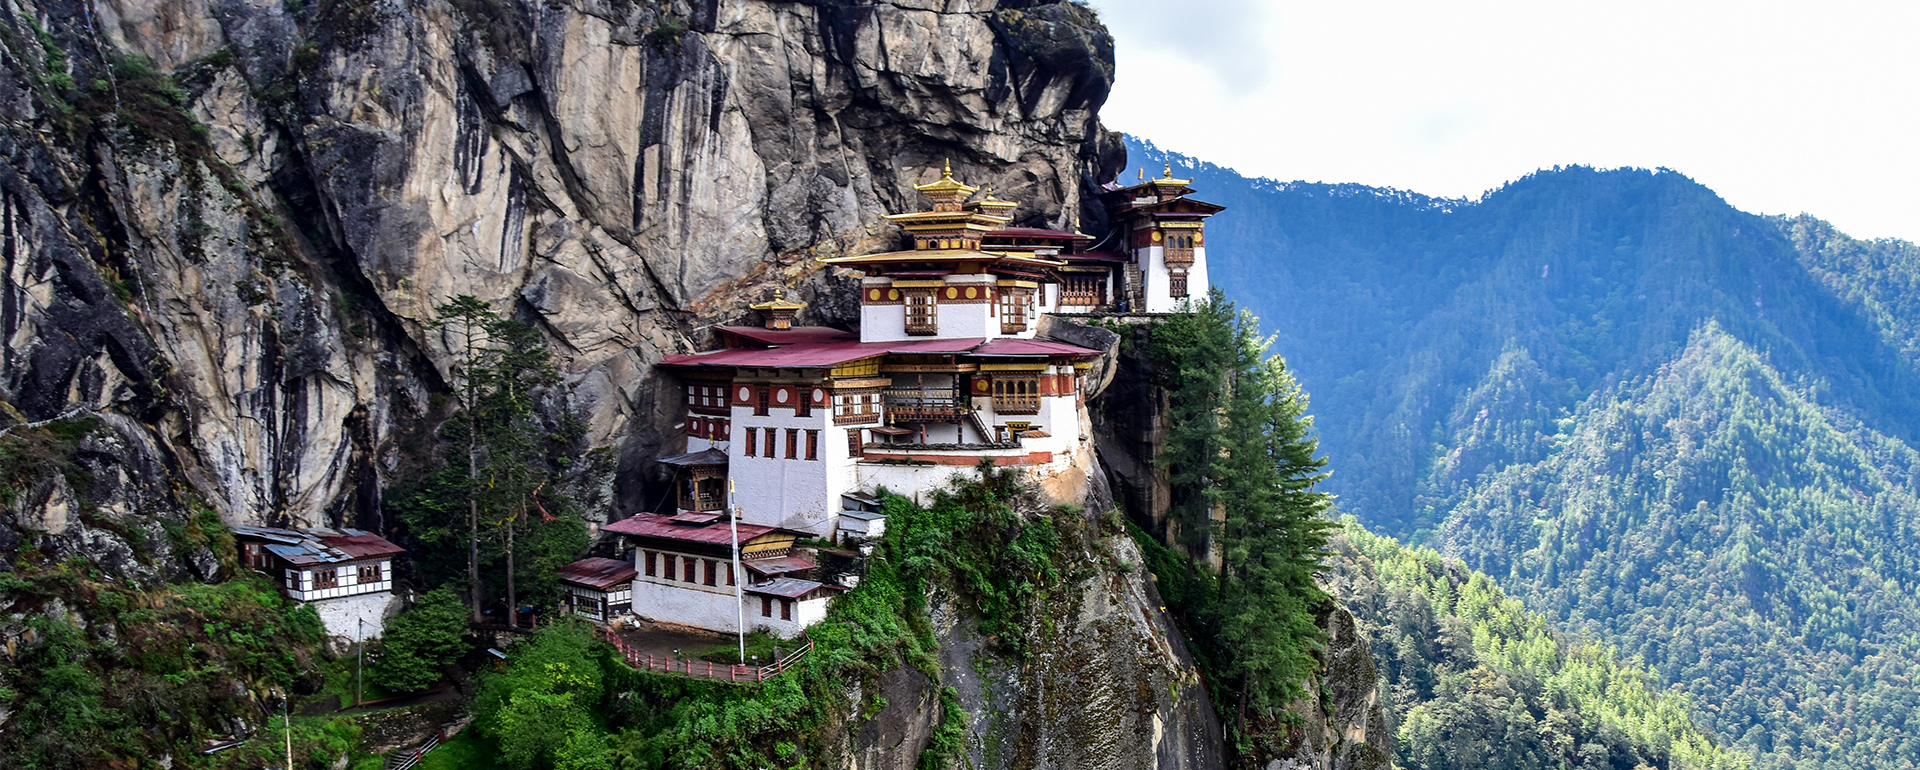 'Tigernest' -buddhistisches Kloster im Parotal